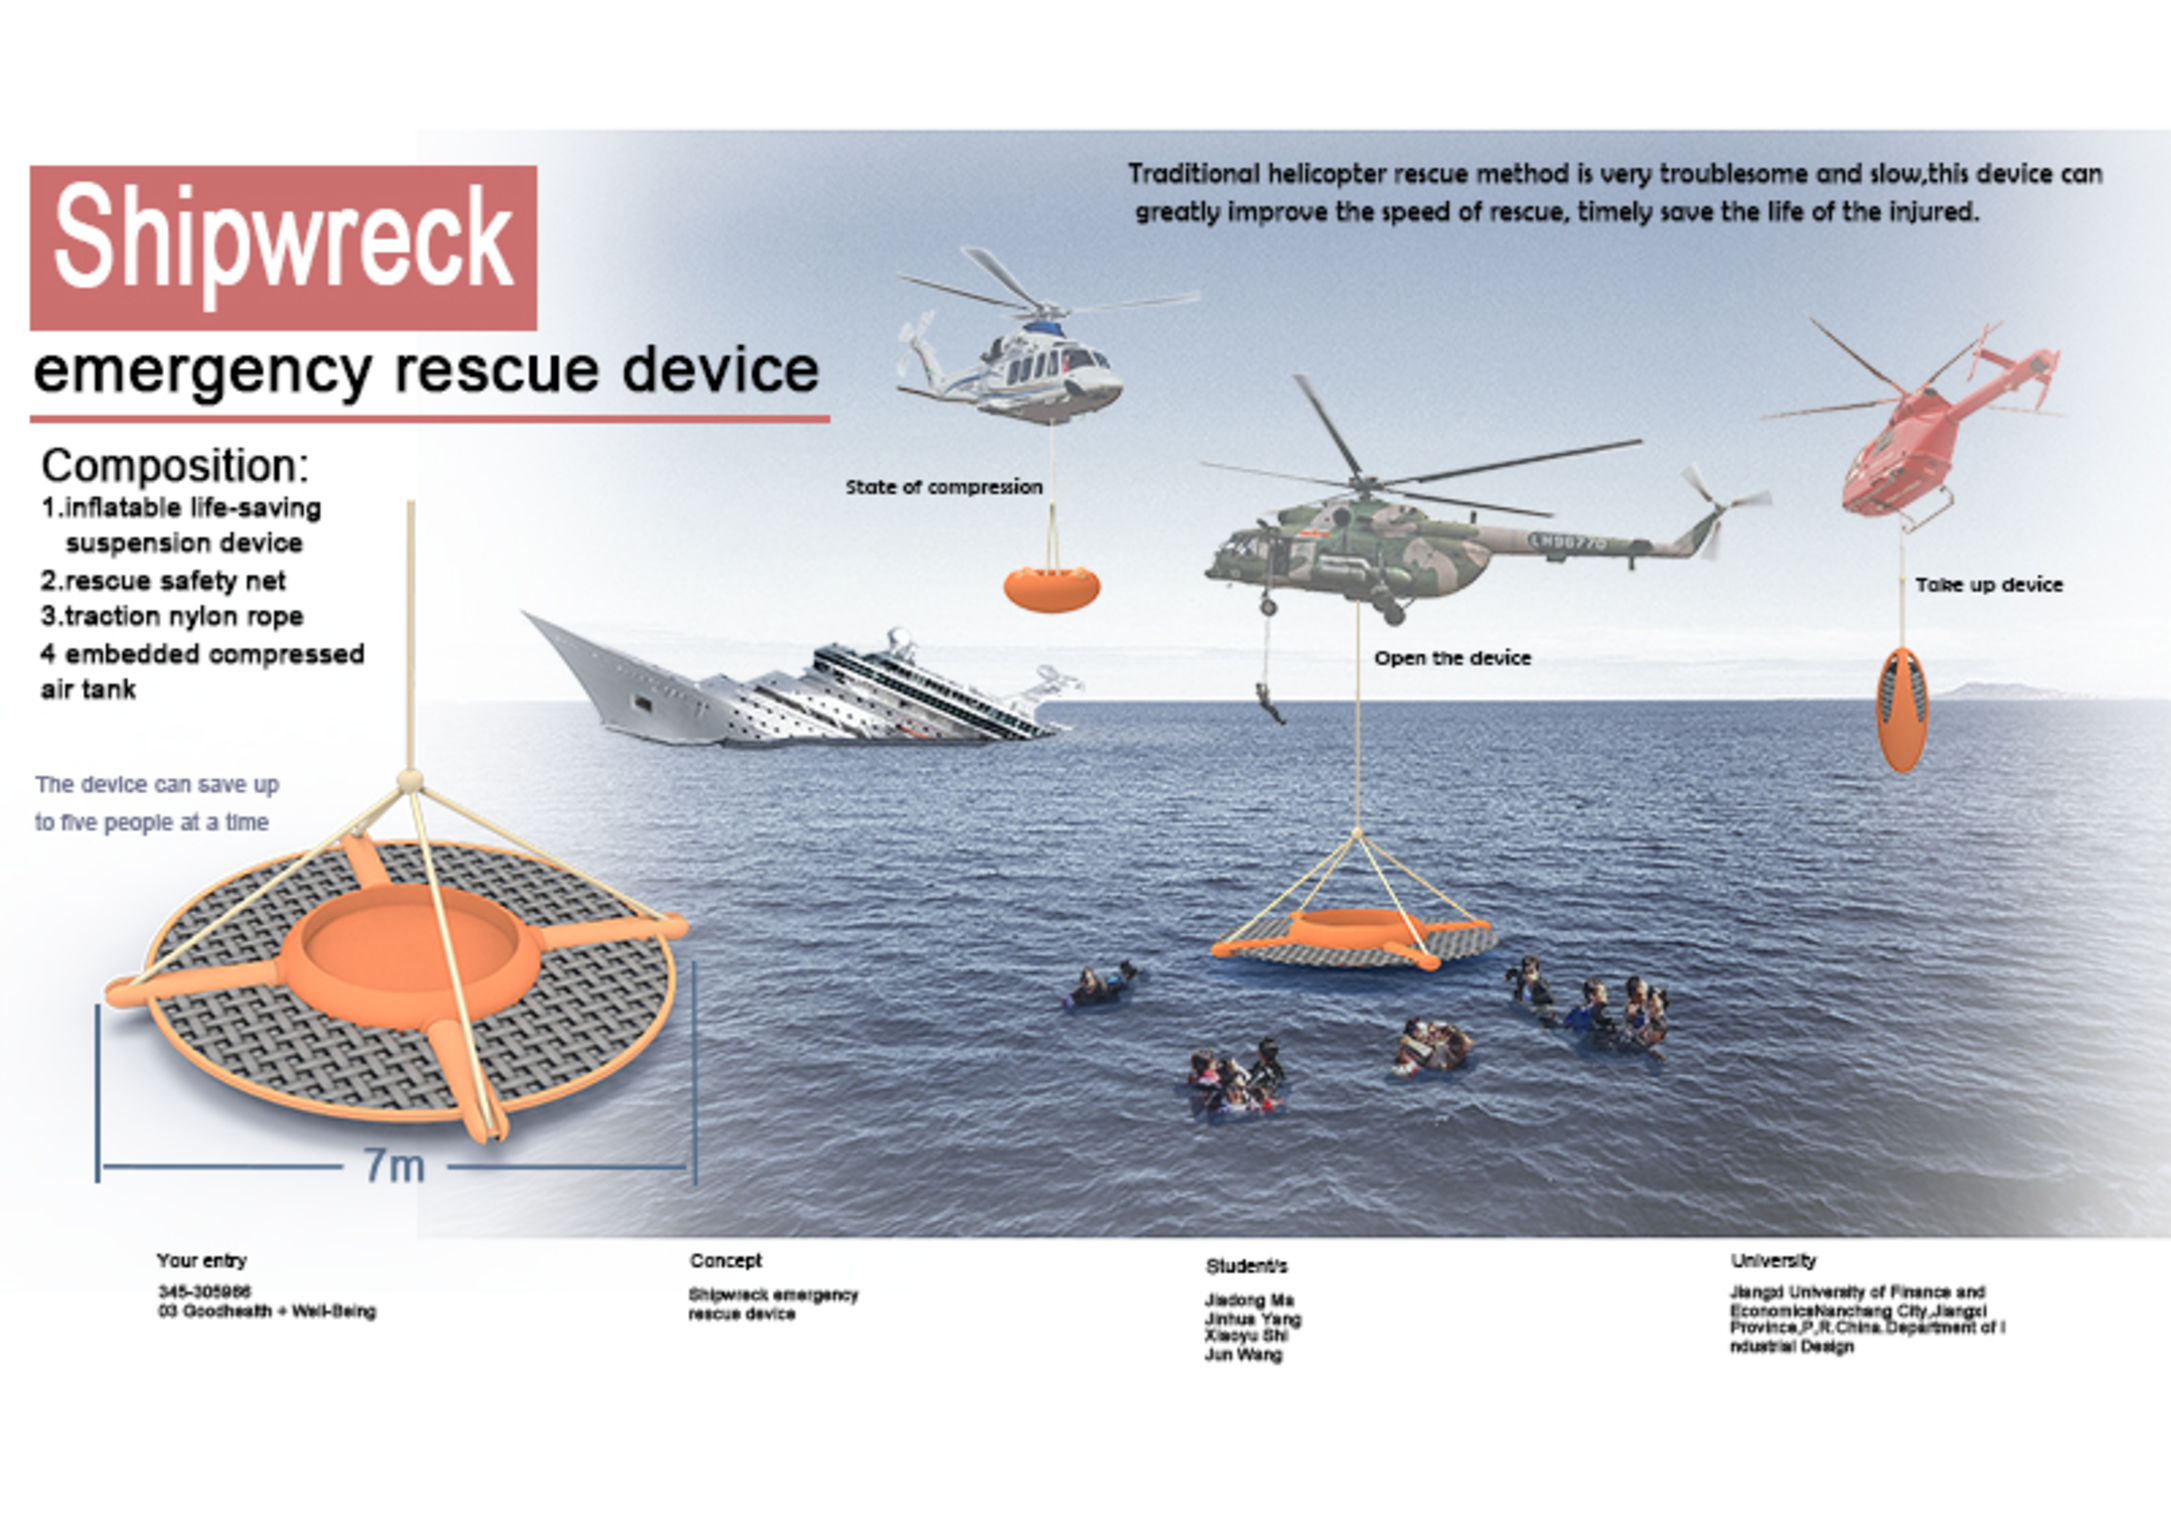 Shipwreck rescue device